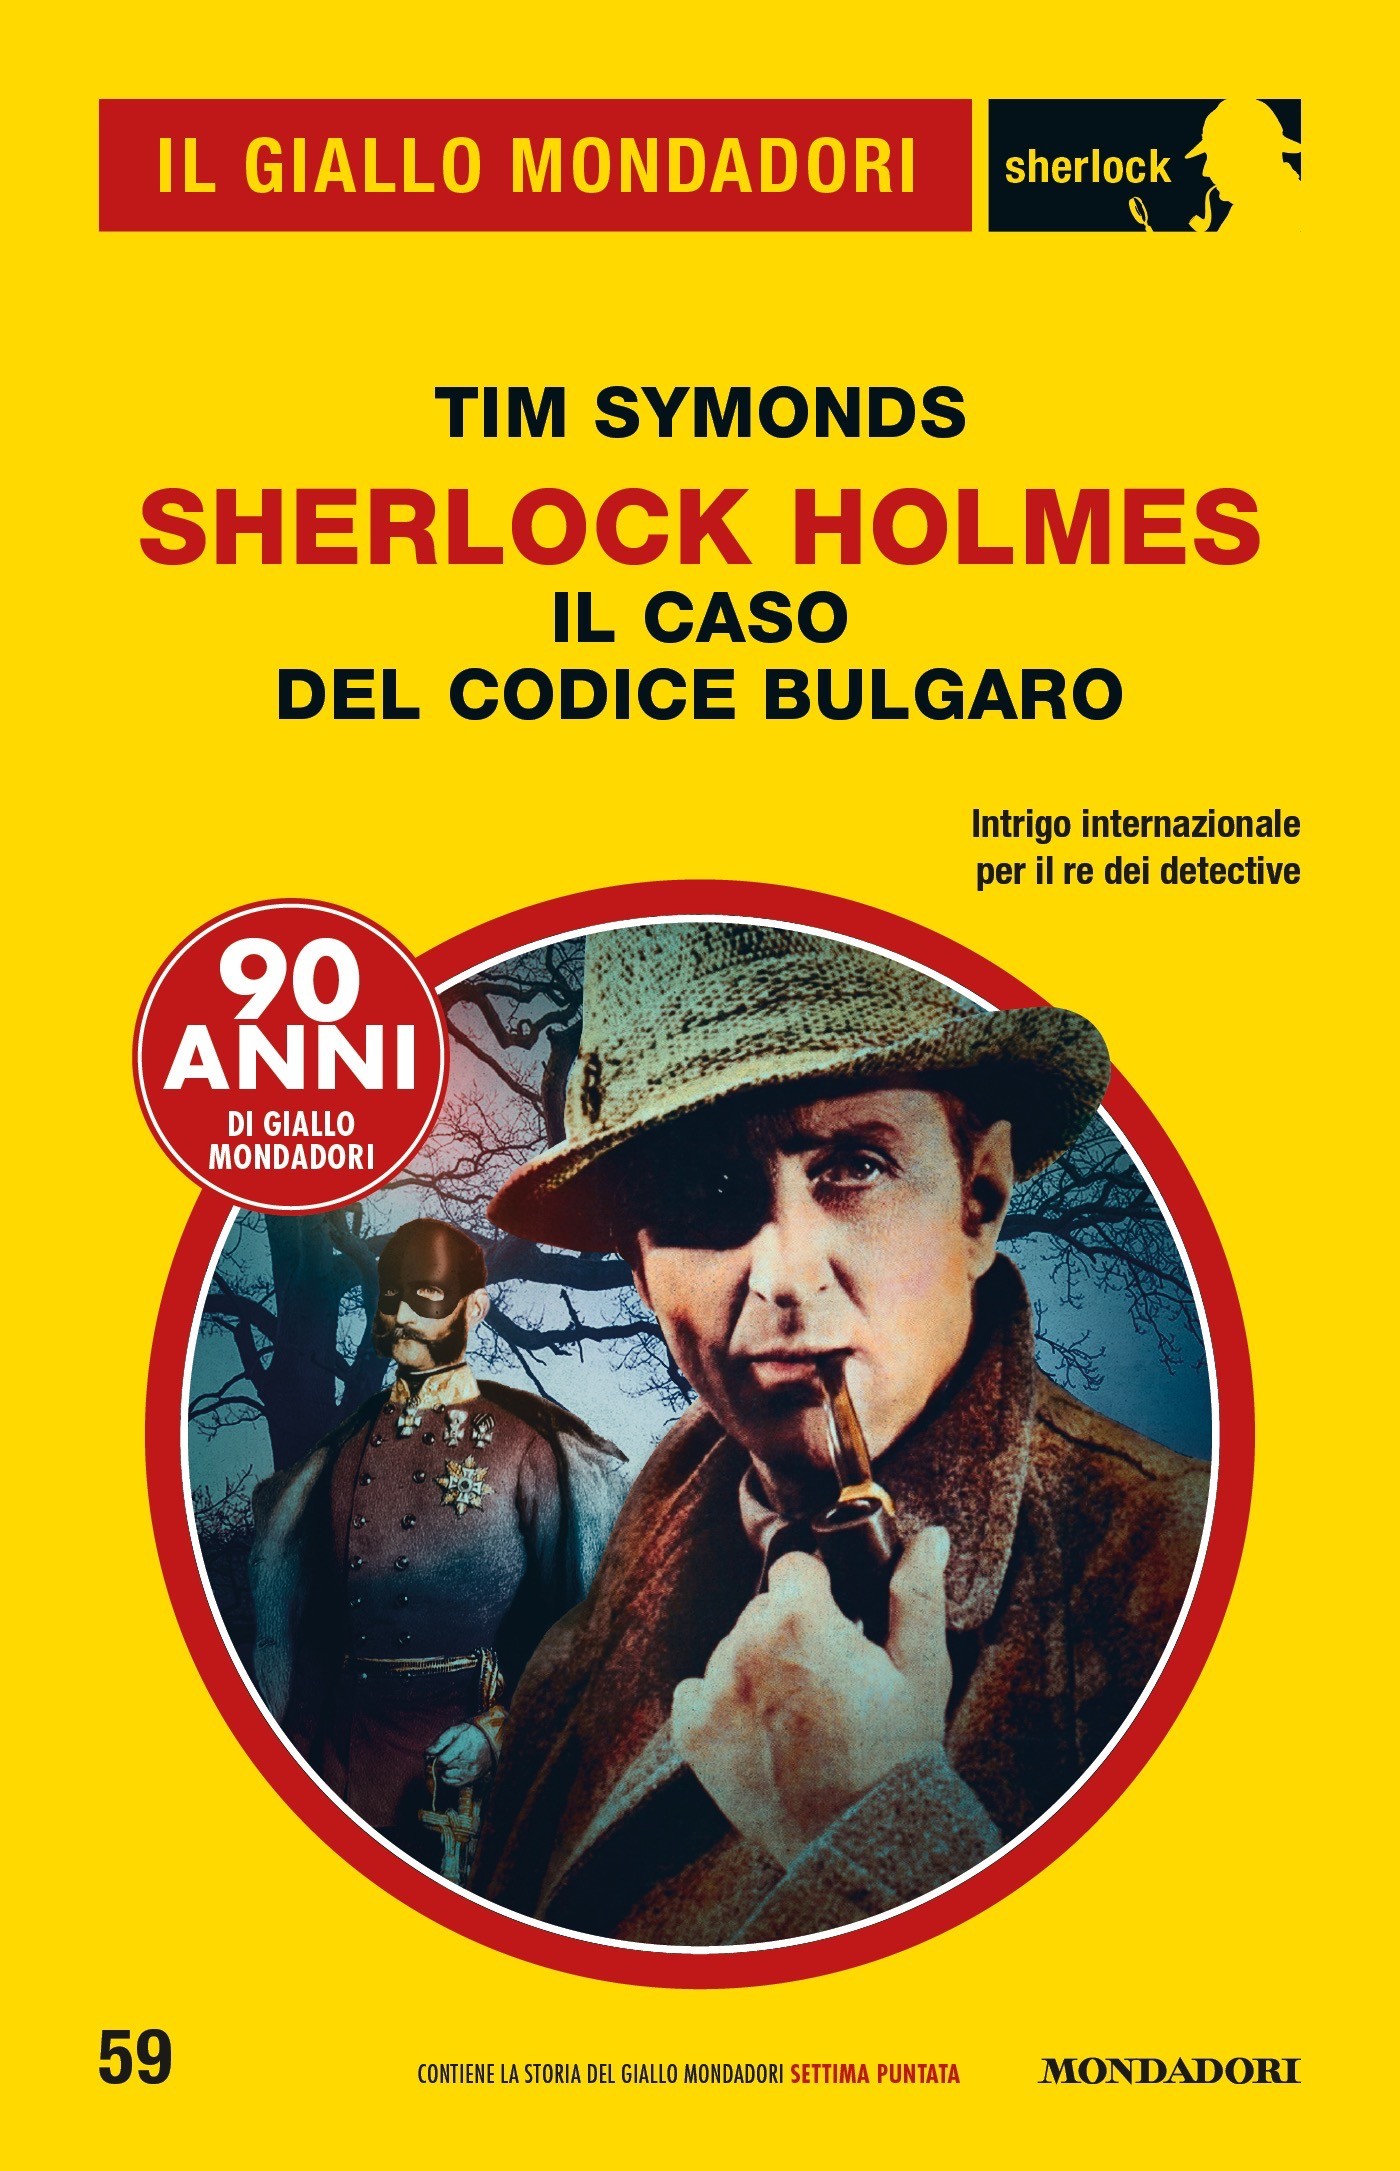 Sherlock Holmes - Il caso del codice bulgaro (Il Giallo Mondadori Sherlock) - Librerie.coop